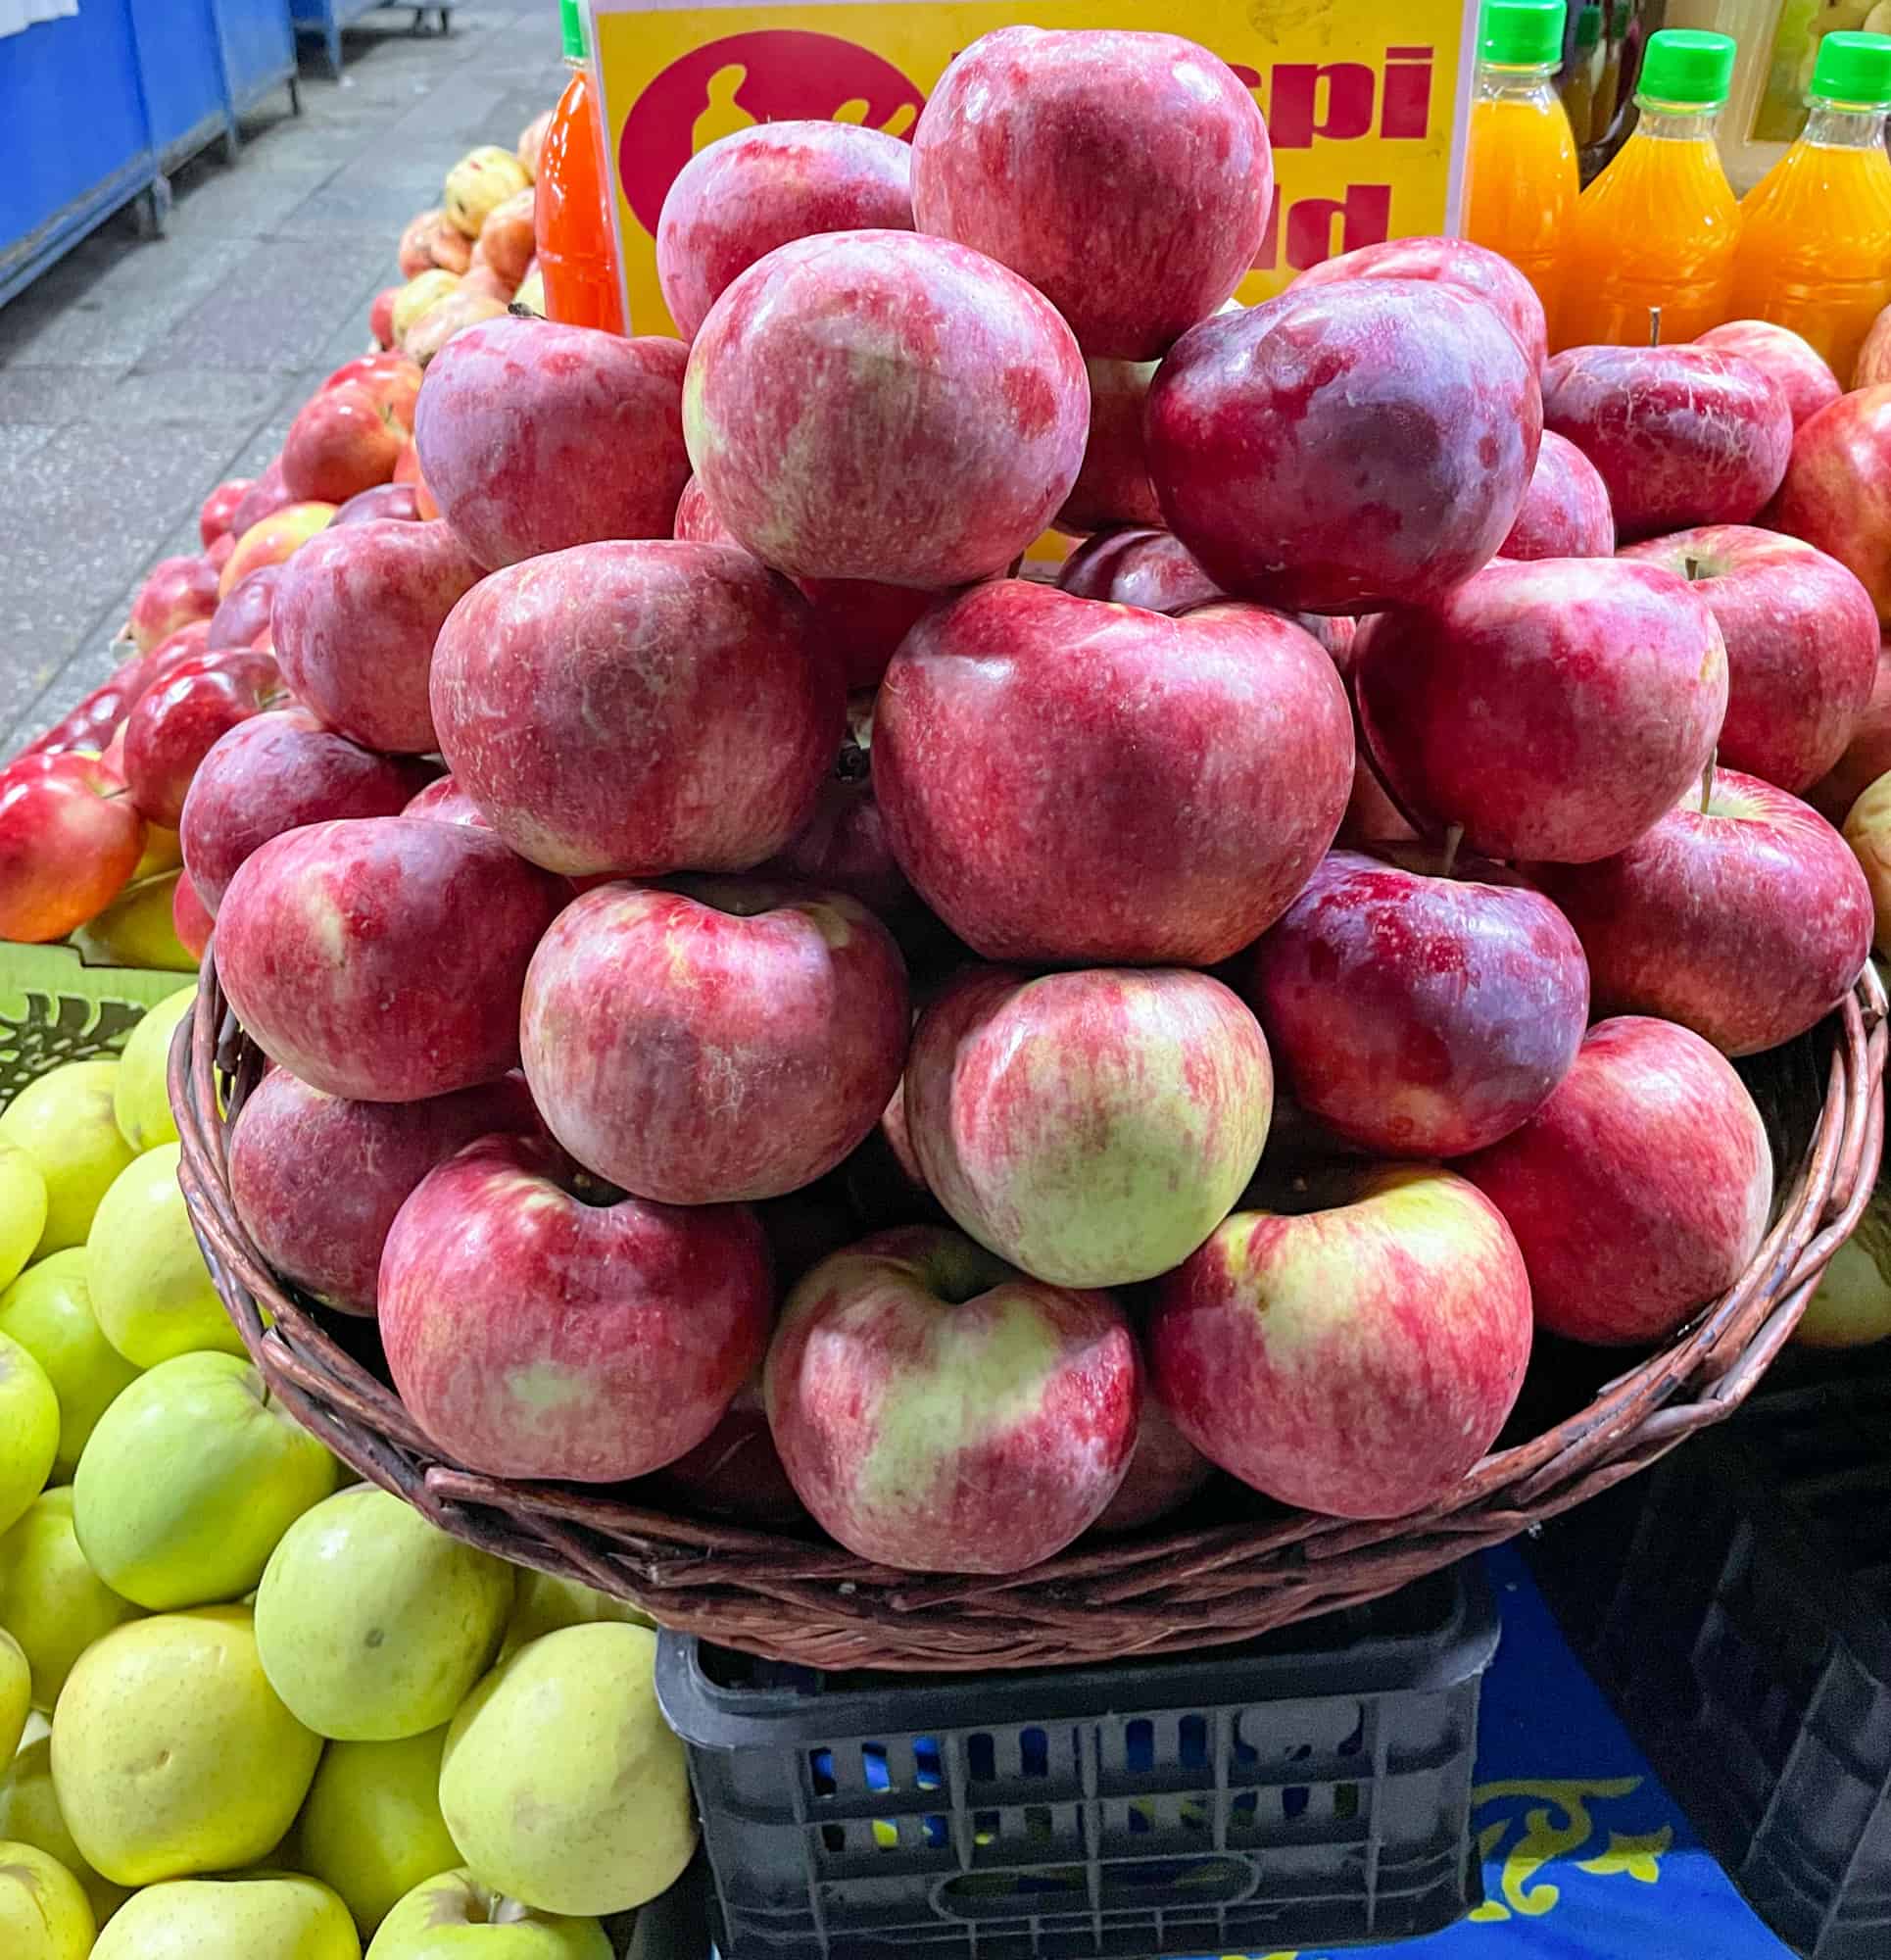 Kazakhstan - Almaty Market Basket of Apples